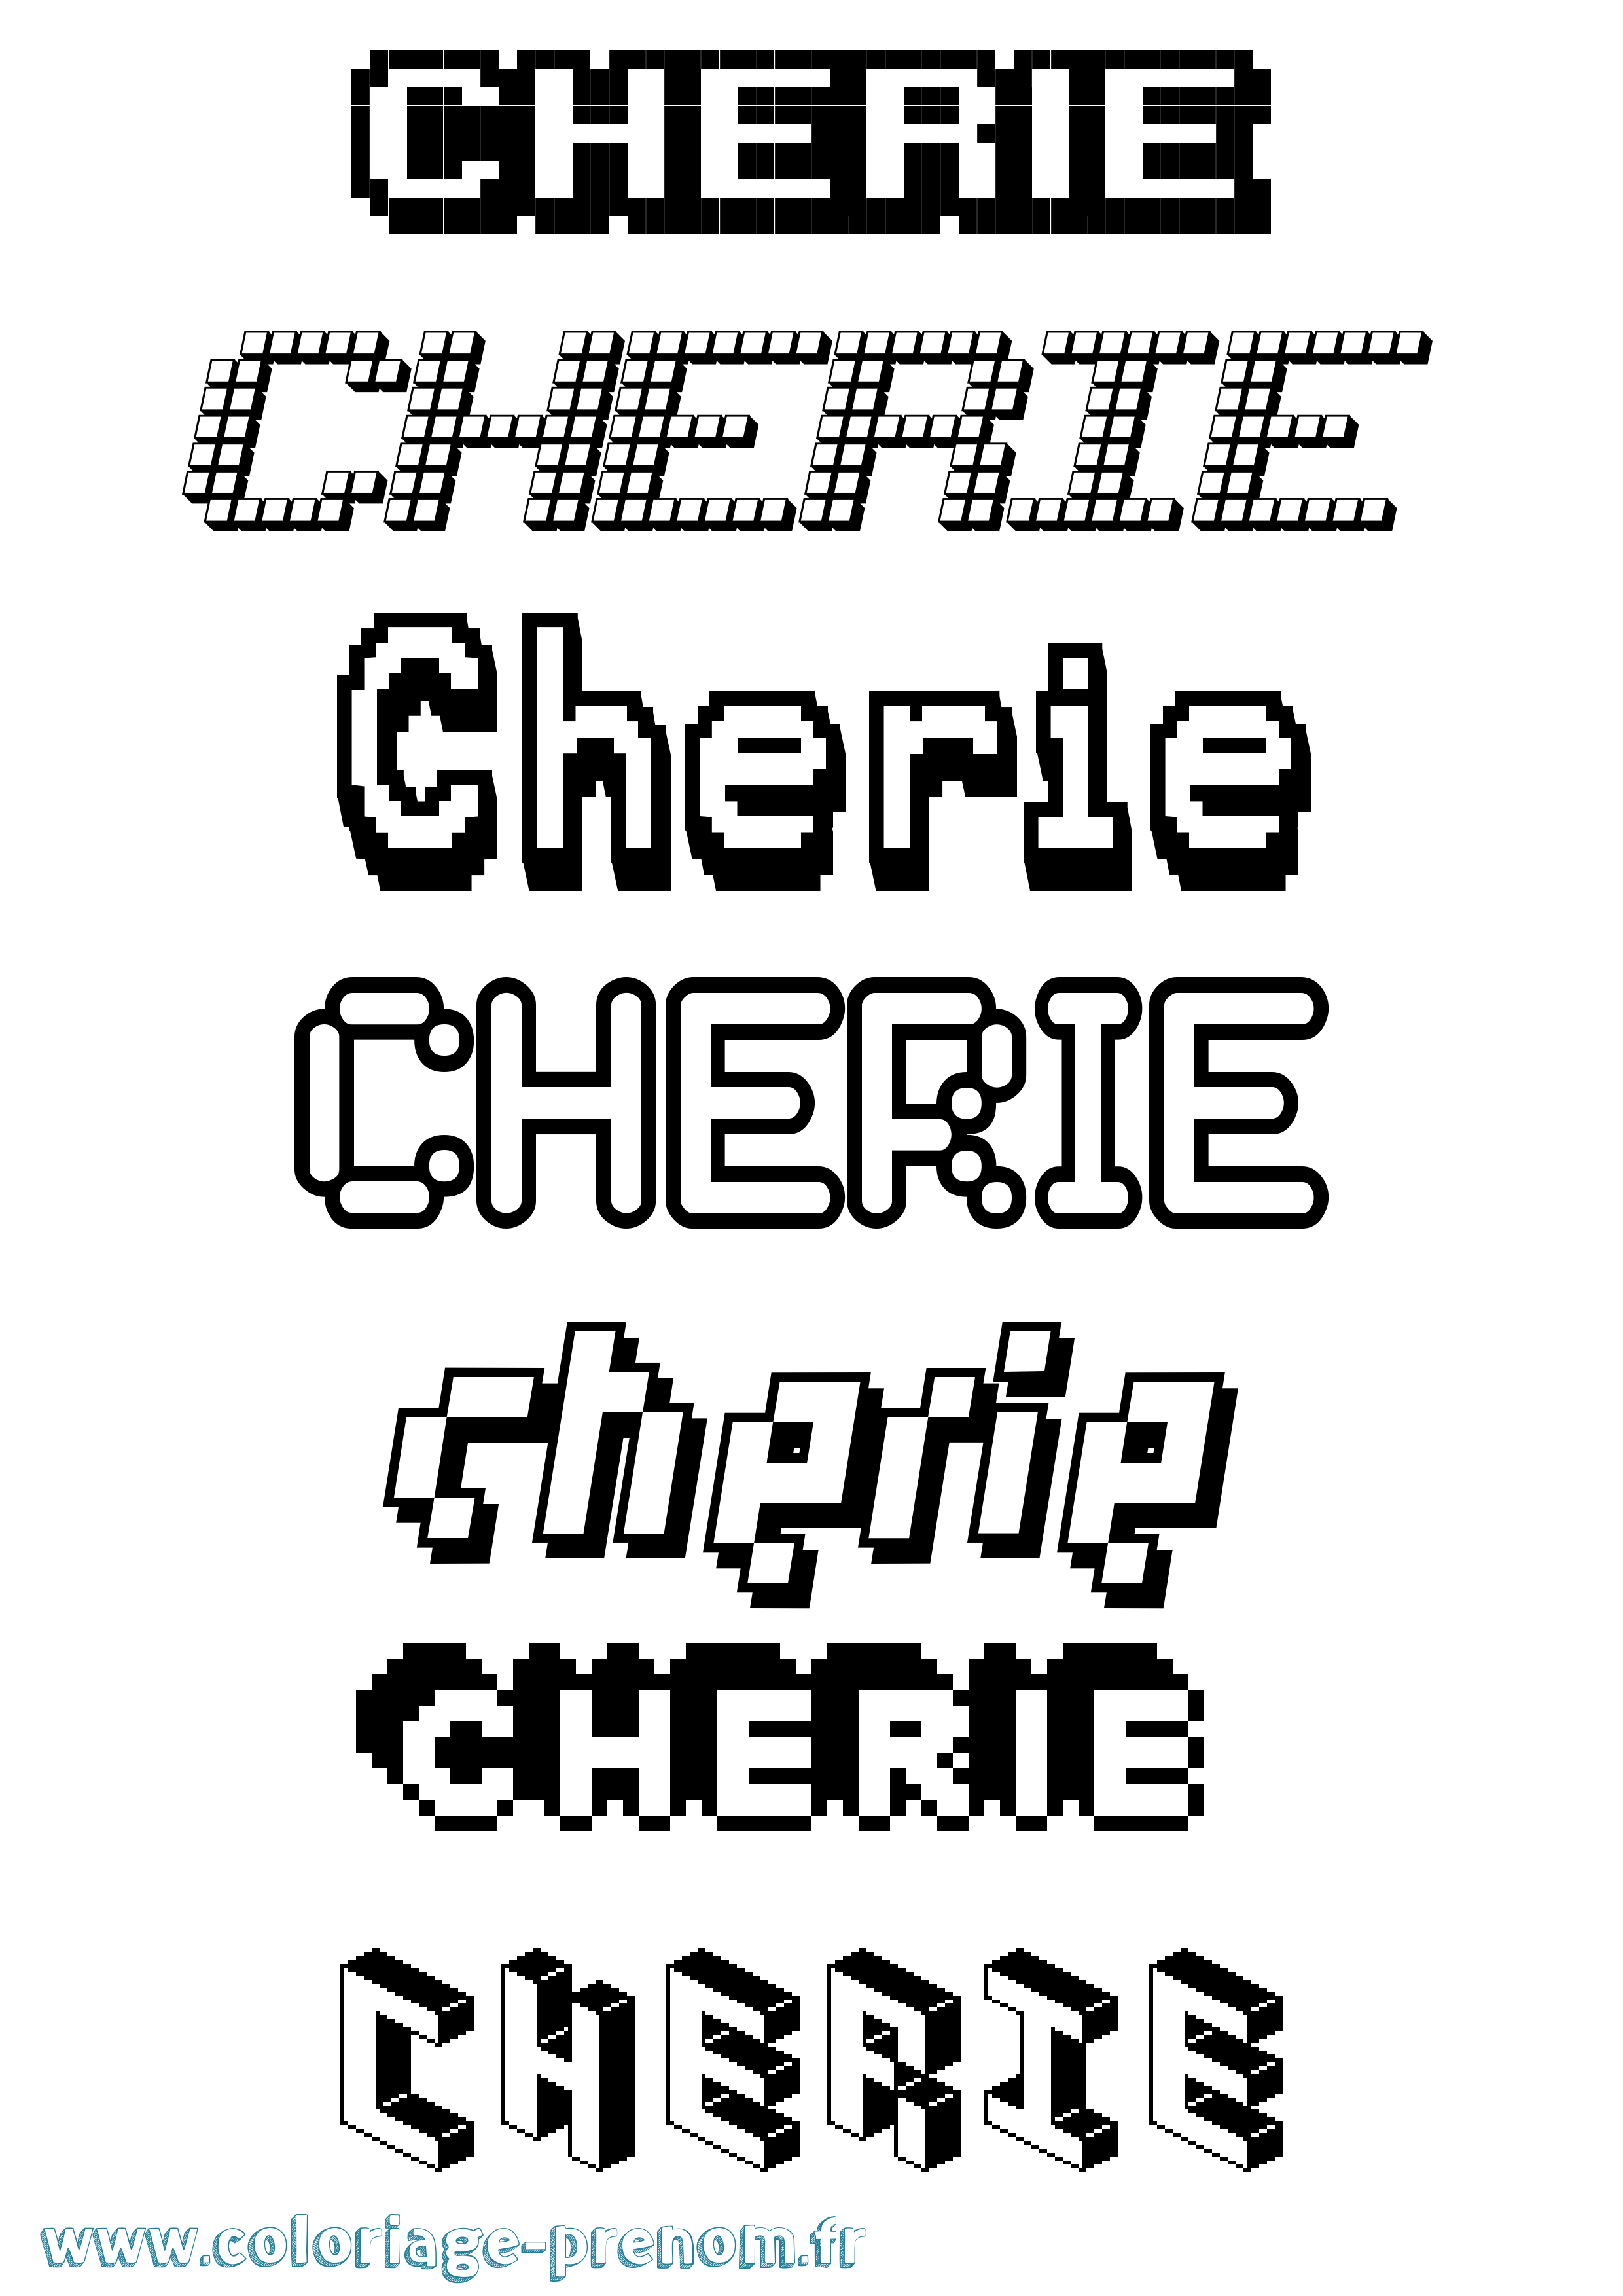 Coloriage prénom Cherie Pixel